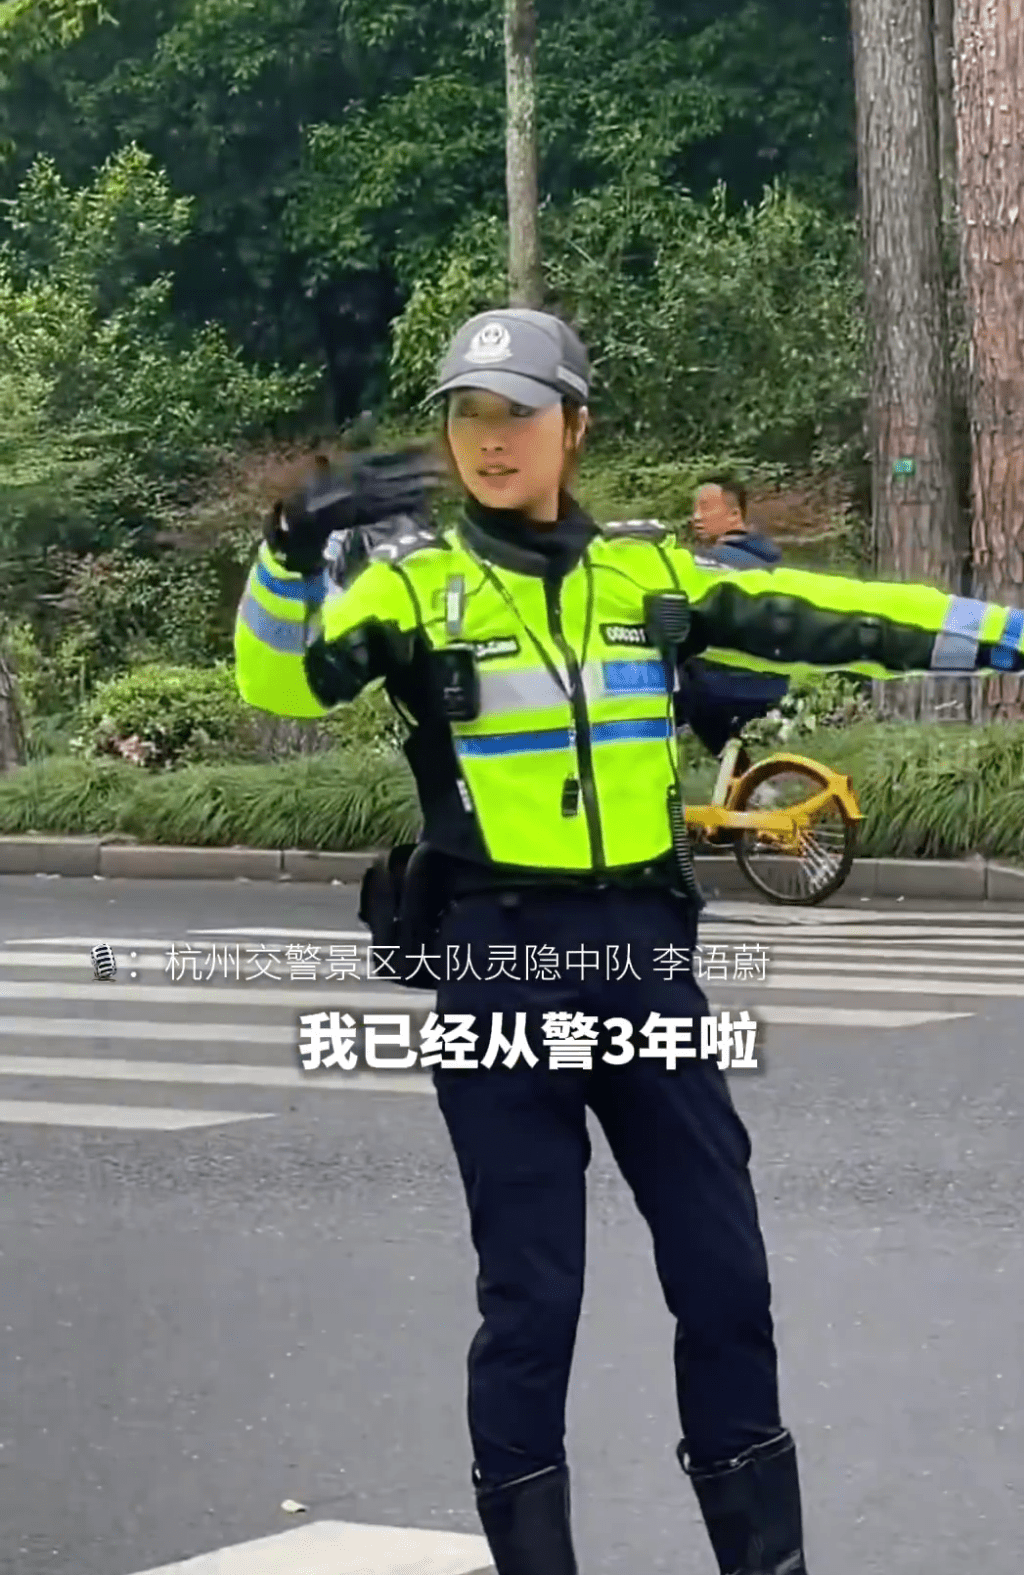 李语蔚是景区交警大队灵隐中队的一名骑警。